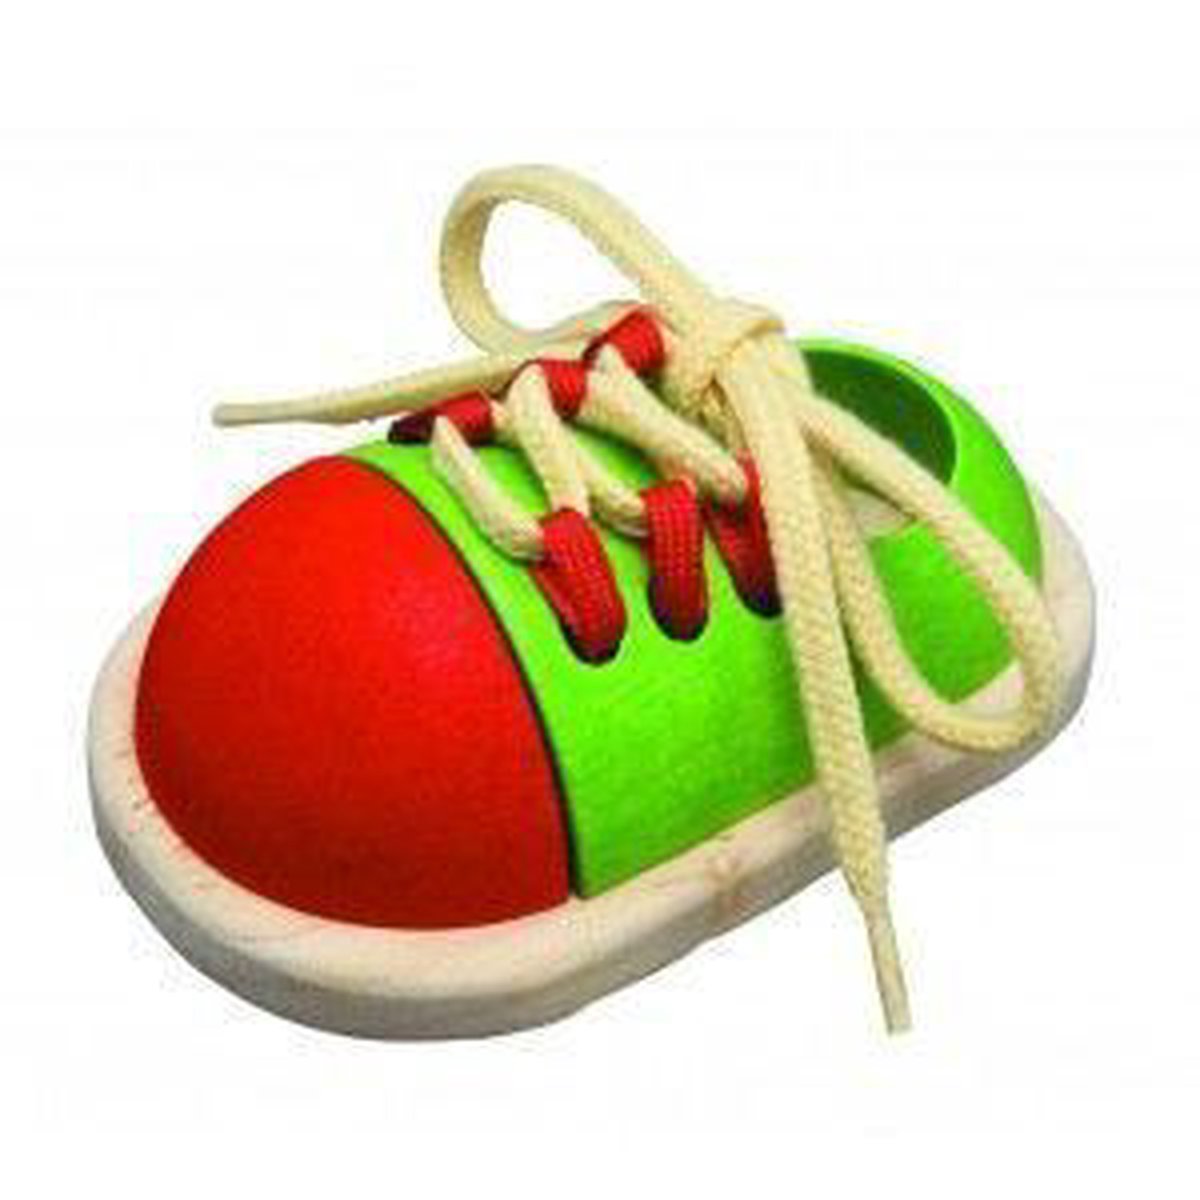 PlanToys Tie-up Shoe jouet à moteur | bol.com